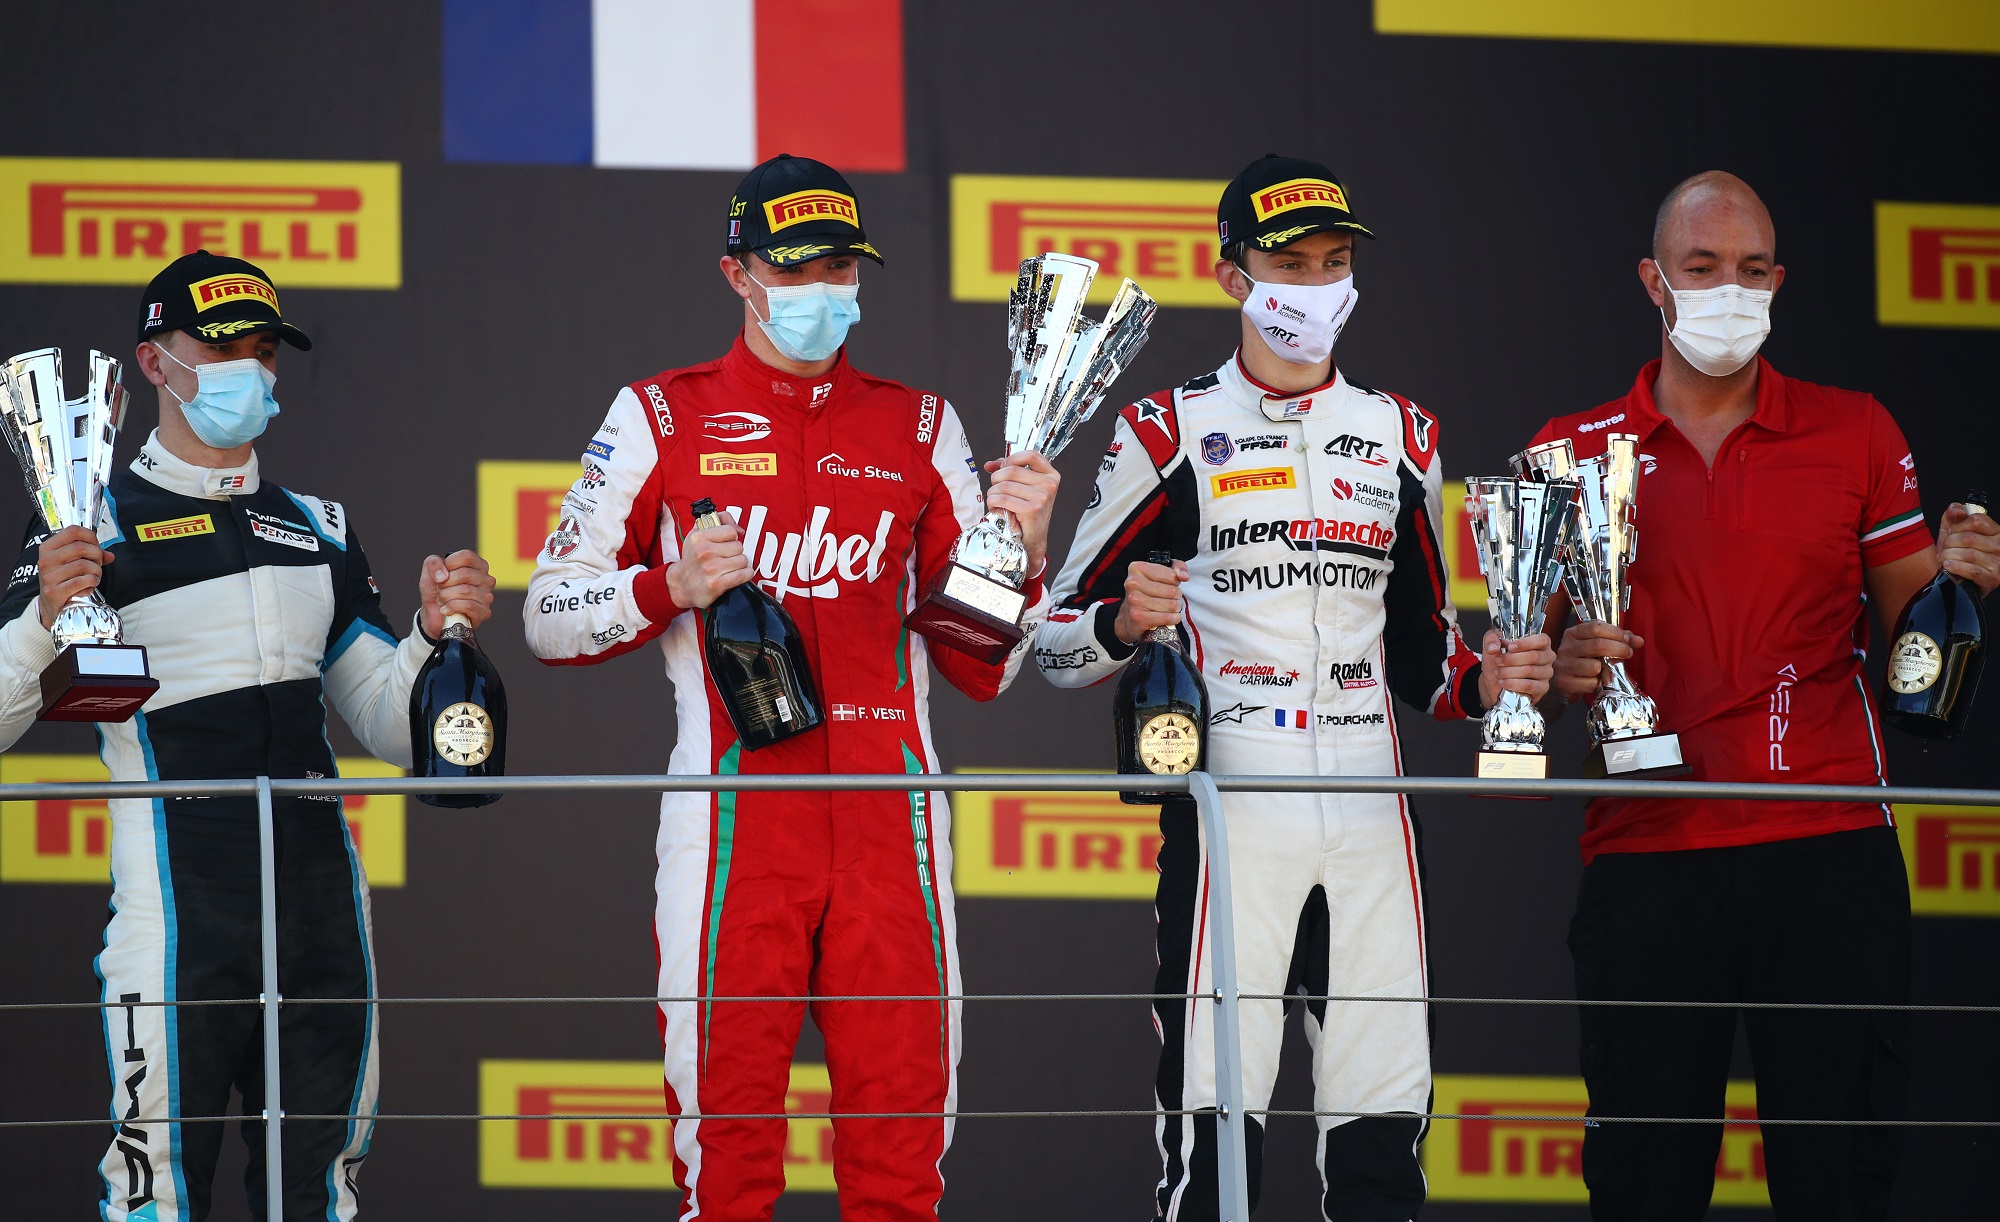 Hughes, Vesti and Pourchaire race 1 mugello FIA F3 2020 podium